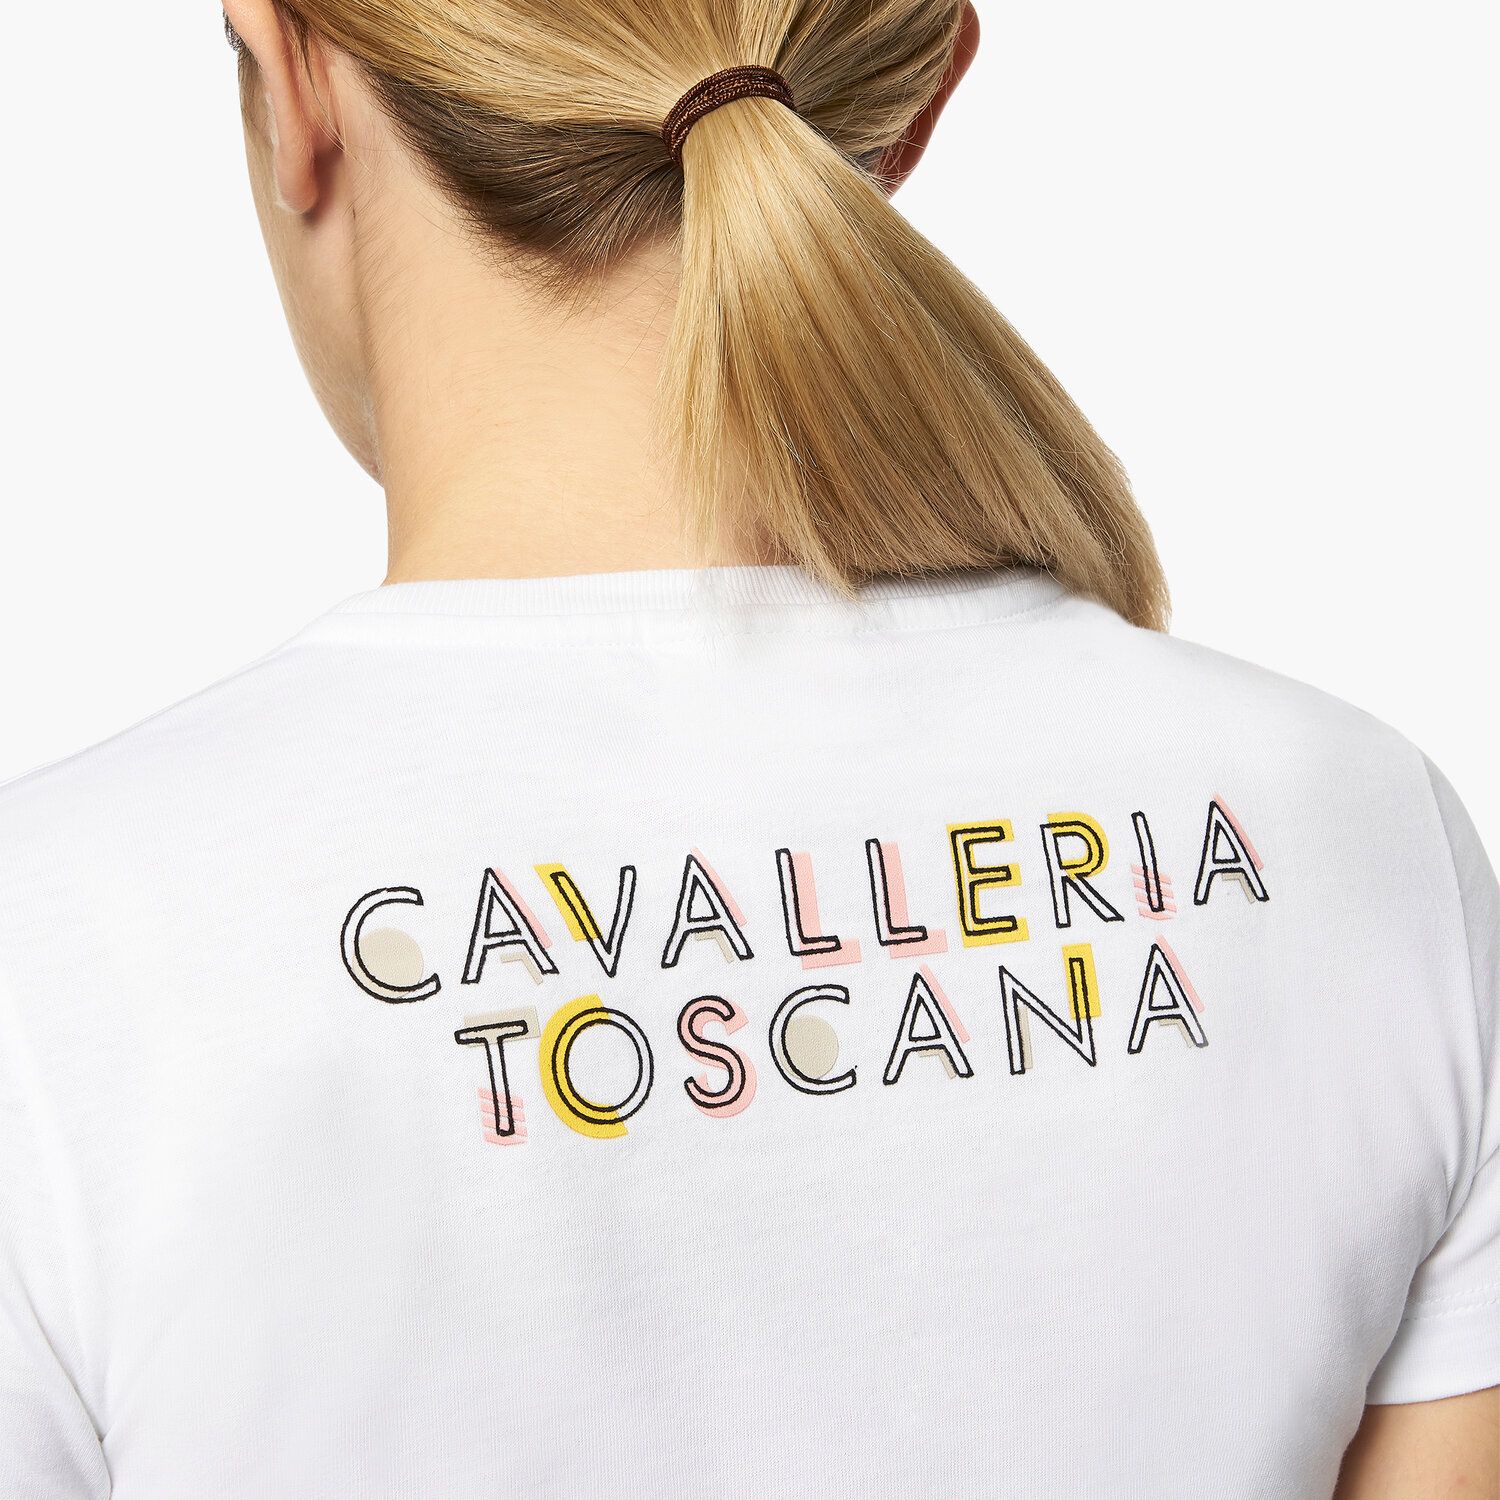 Cavalleria Toscana Girls’ cotton jersey t-shirt WHITE-3